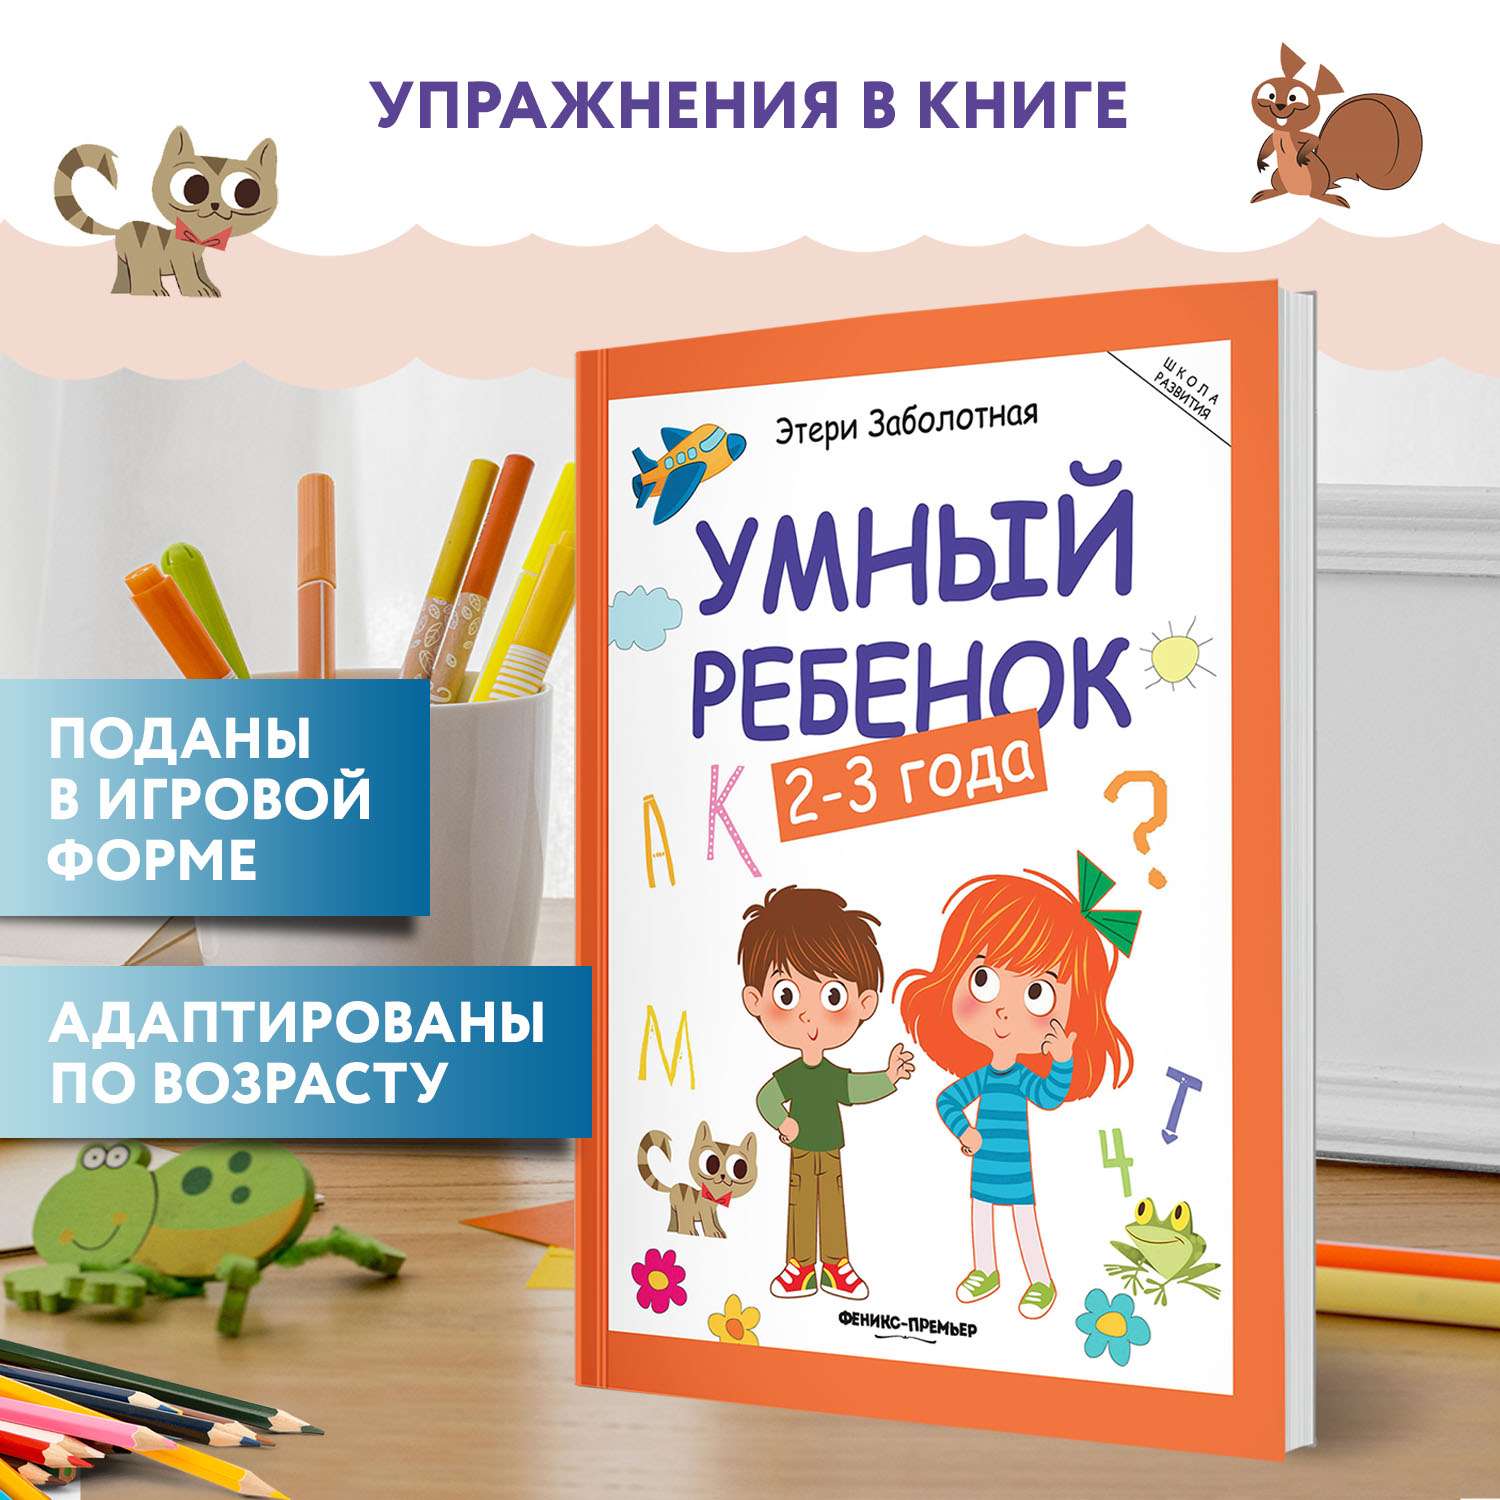 Книга Феникс Премьер Умный ребенок 2-3 года. Развитие ребенка - фото 3